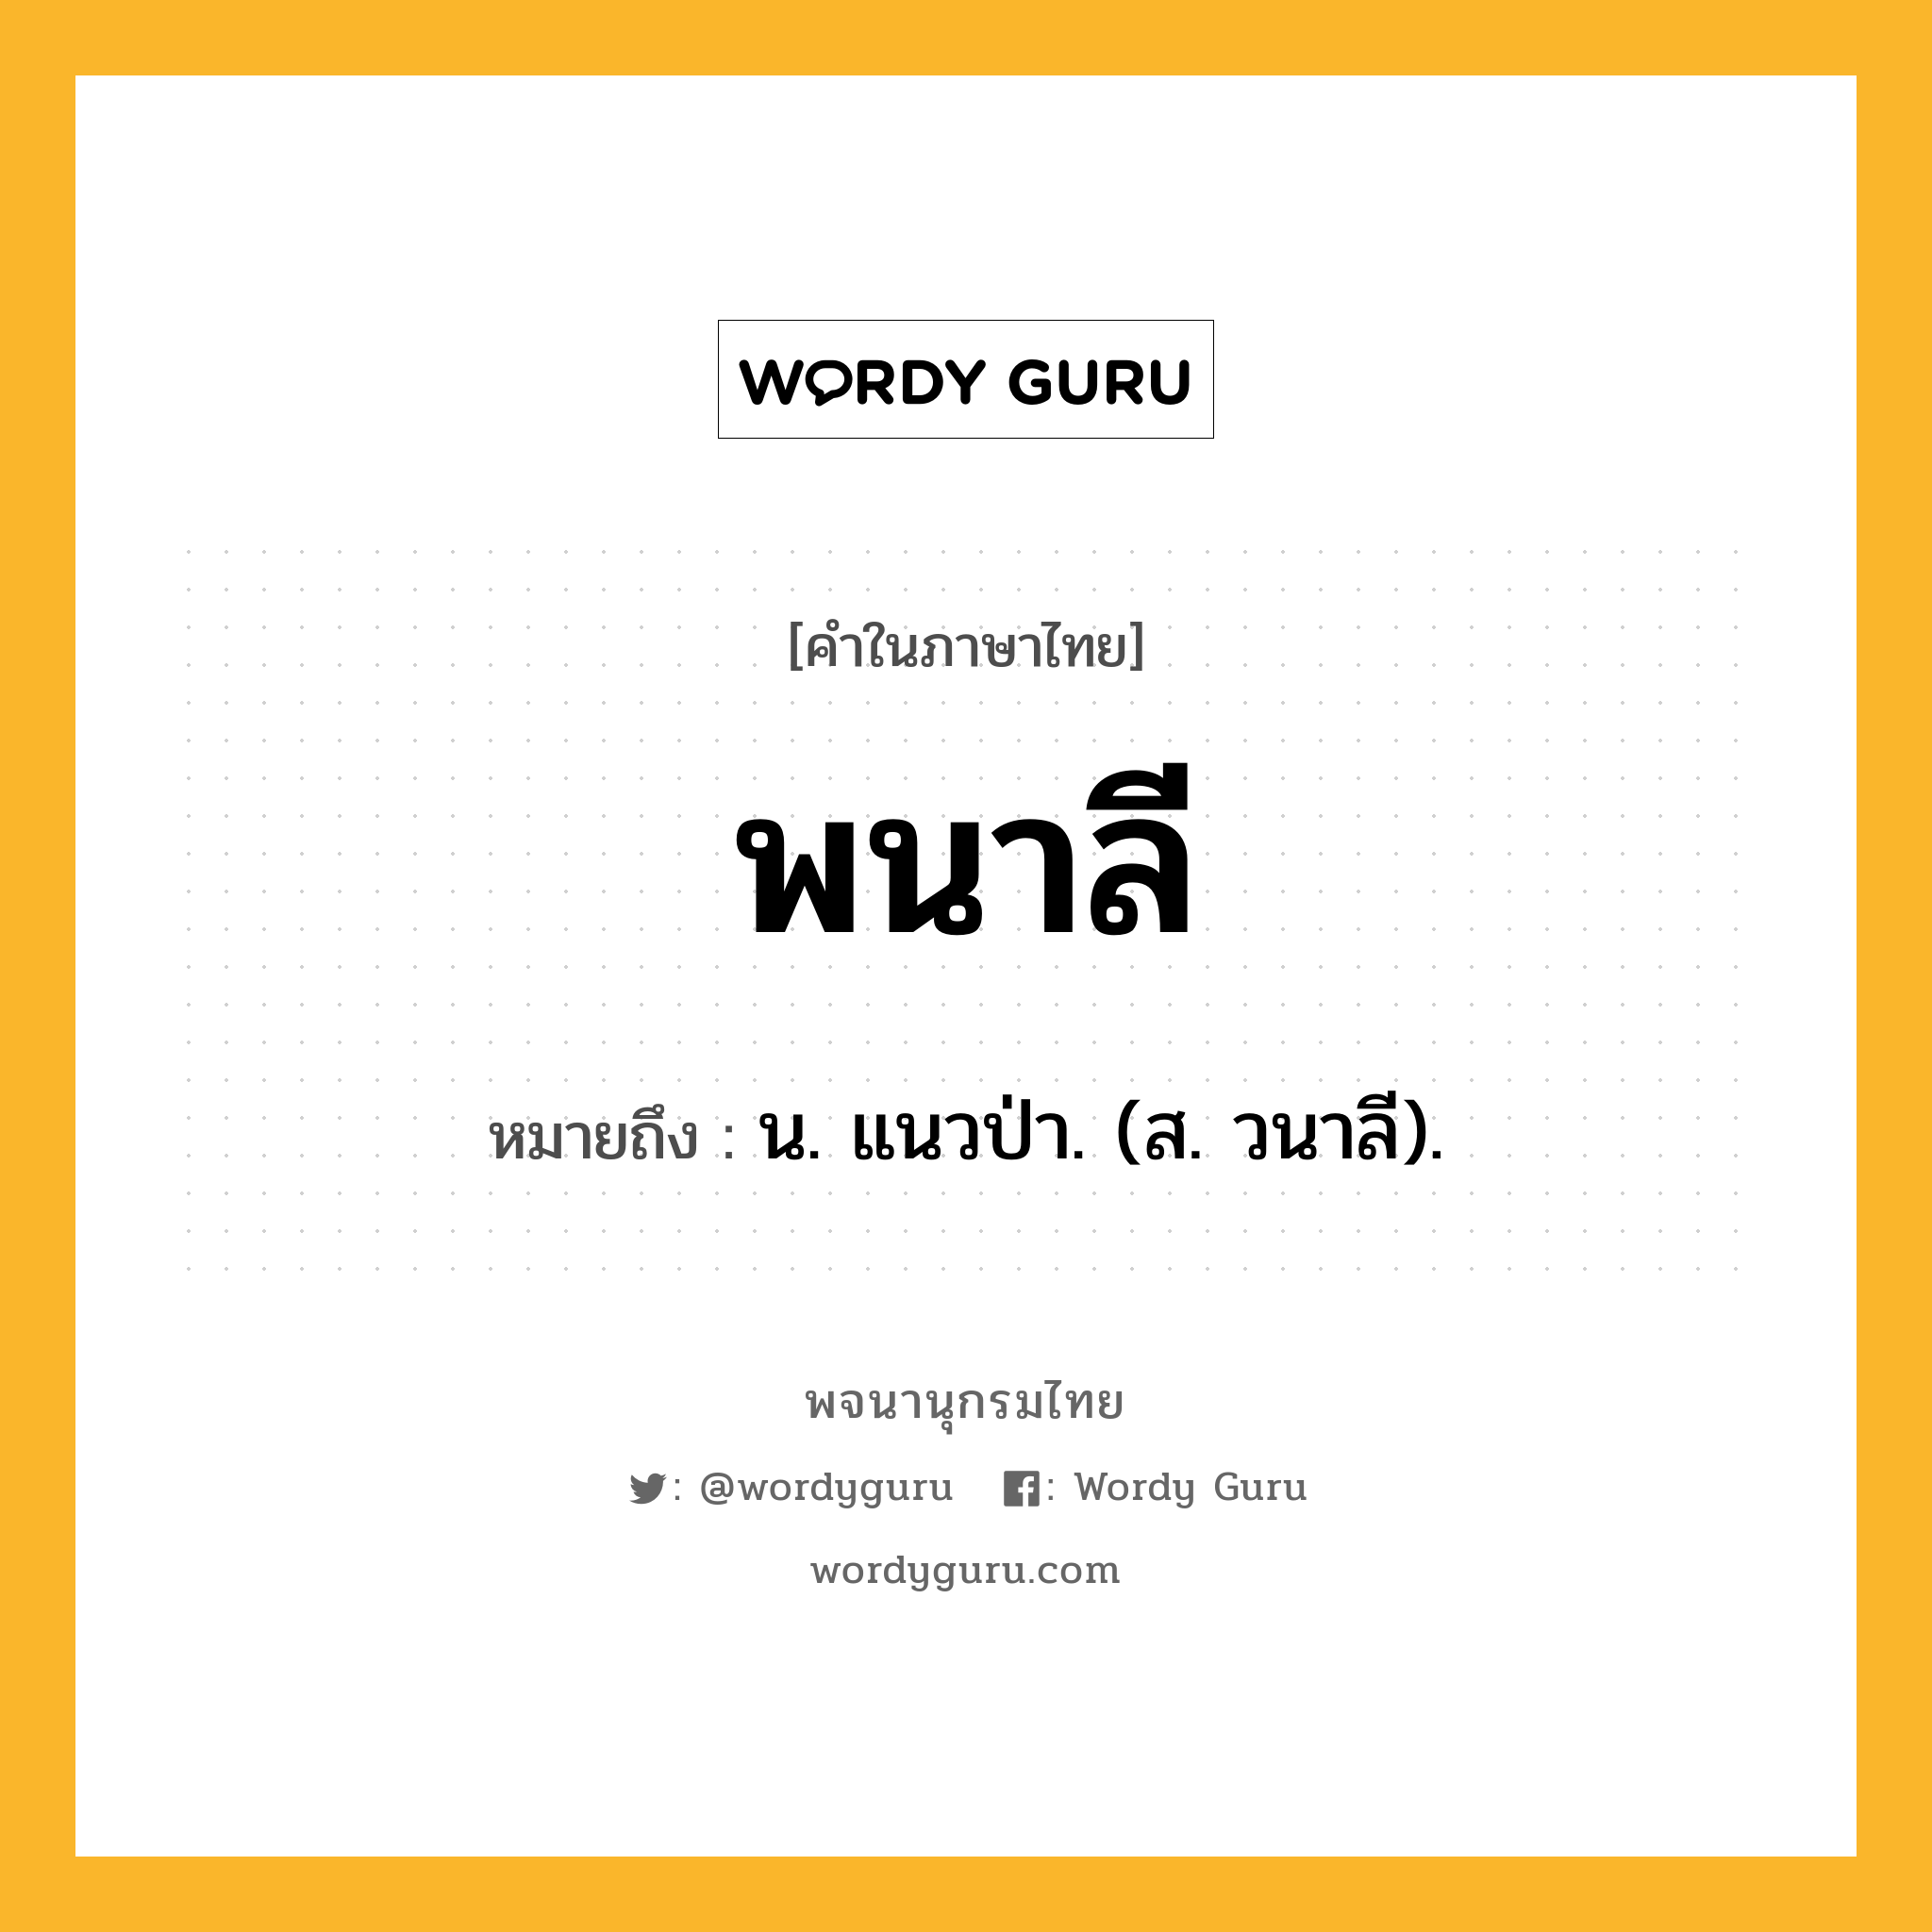 พนาลี ความหมาย หมายถึงอะไร?, คำในภาษาไทย พนาลี หมายถึง น. แนวป่า. (ส. วนาลี).